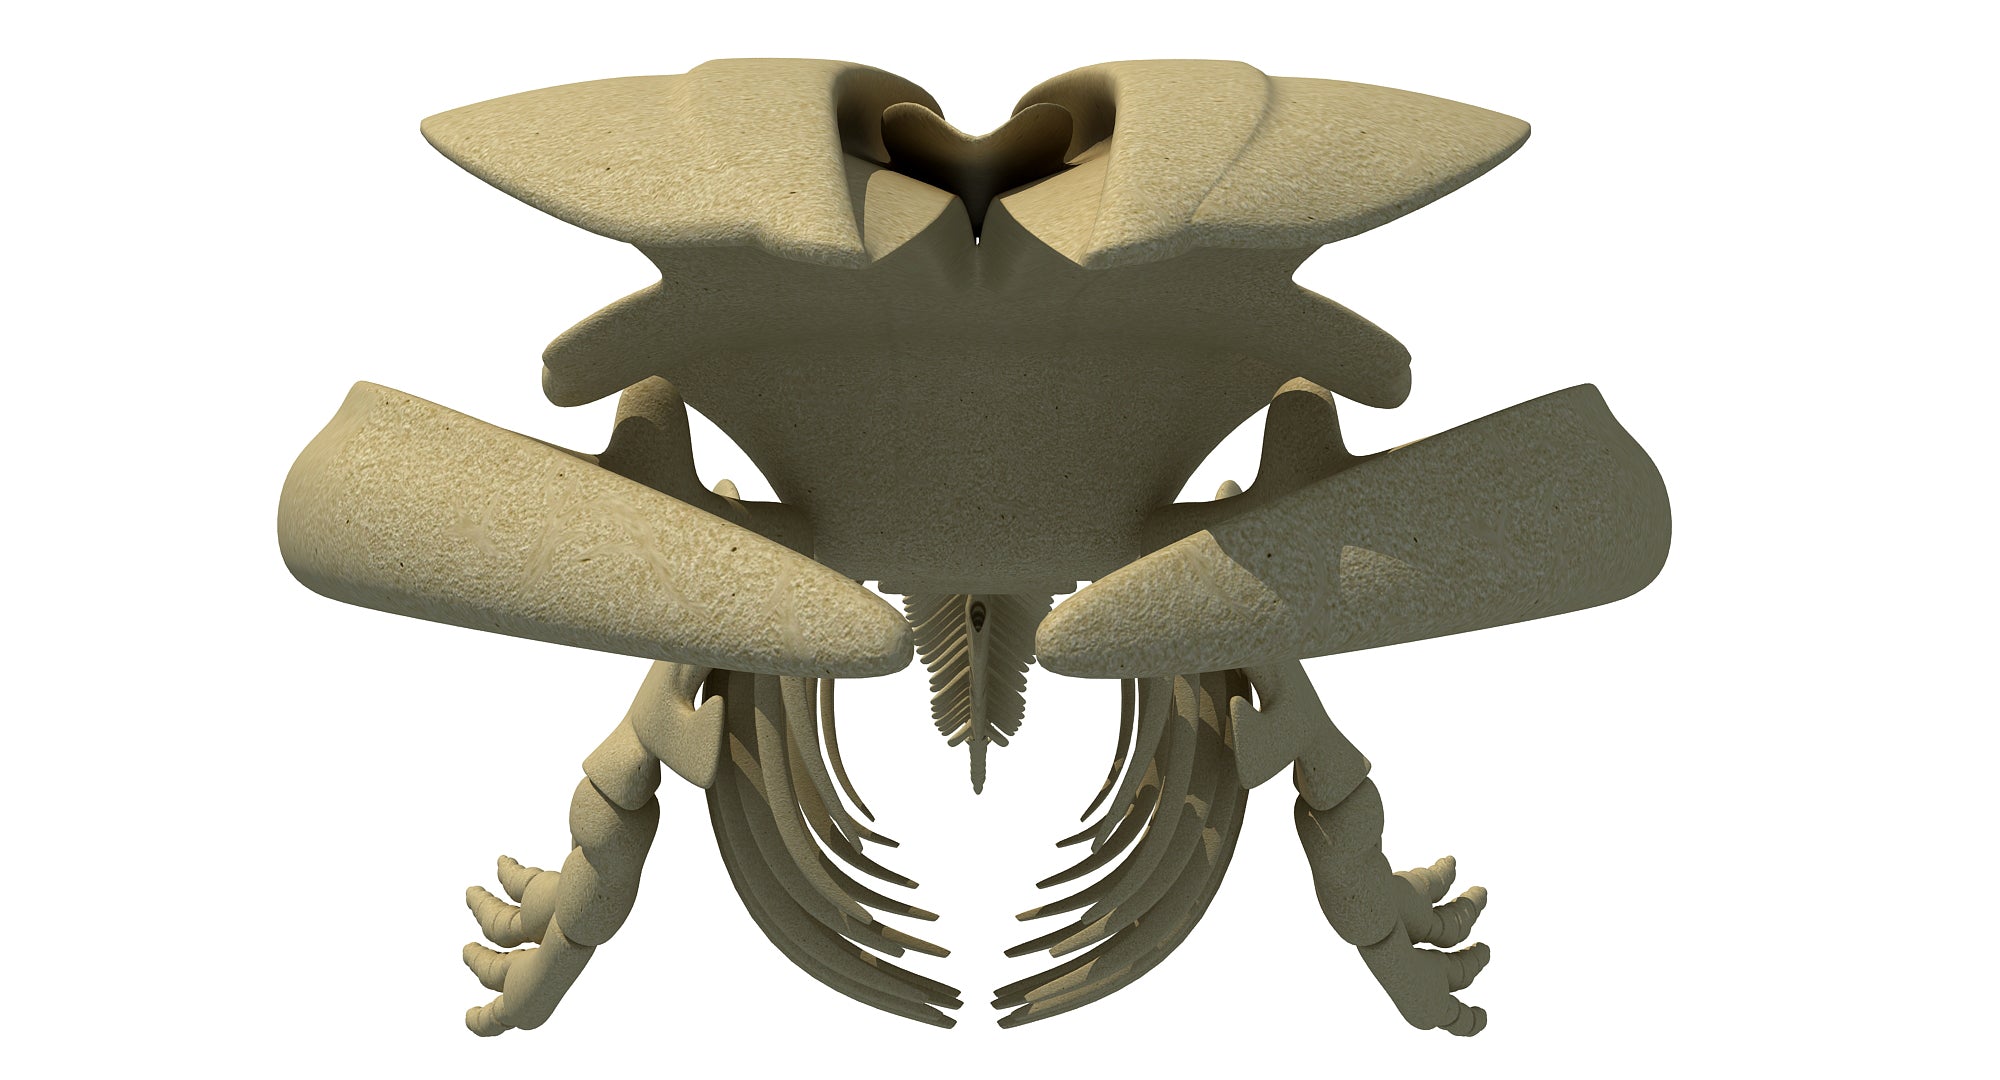 Blue Whale Skeleton 3D Model